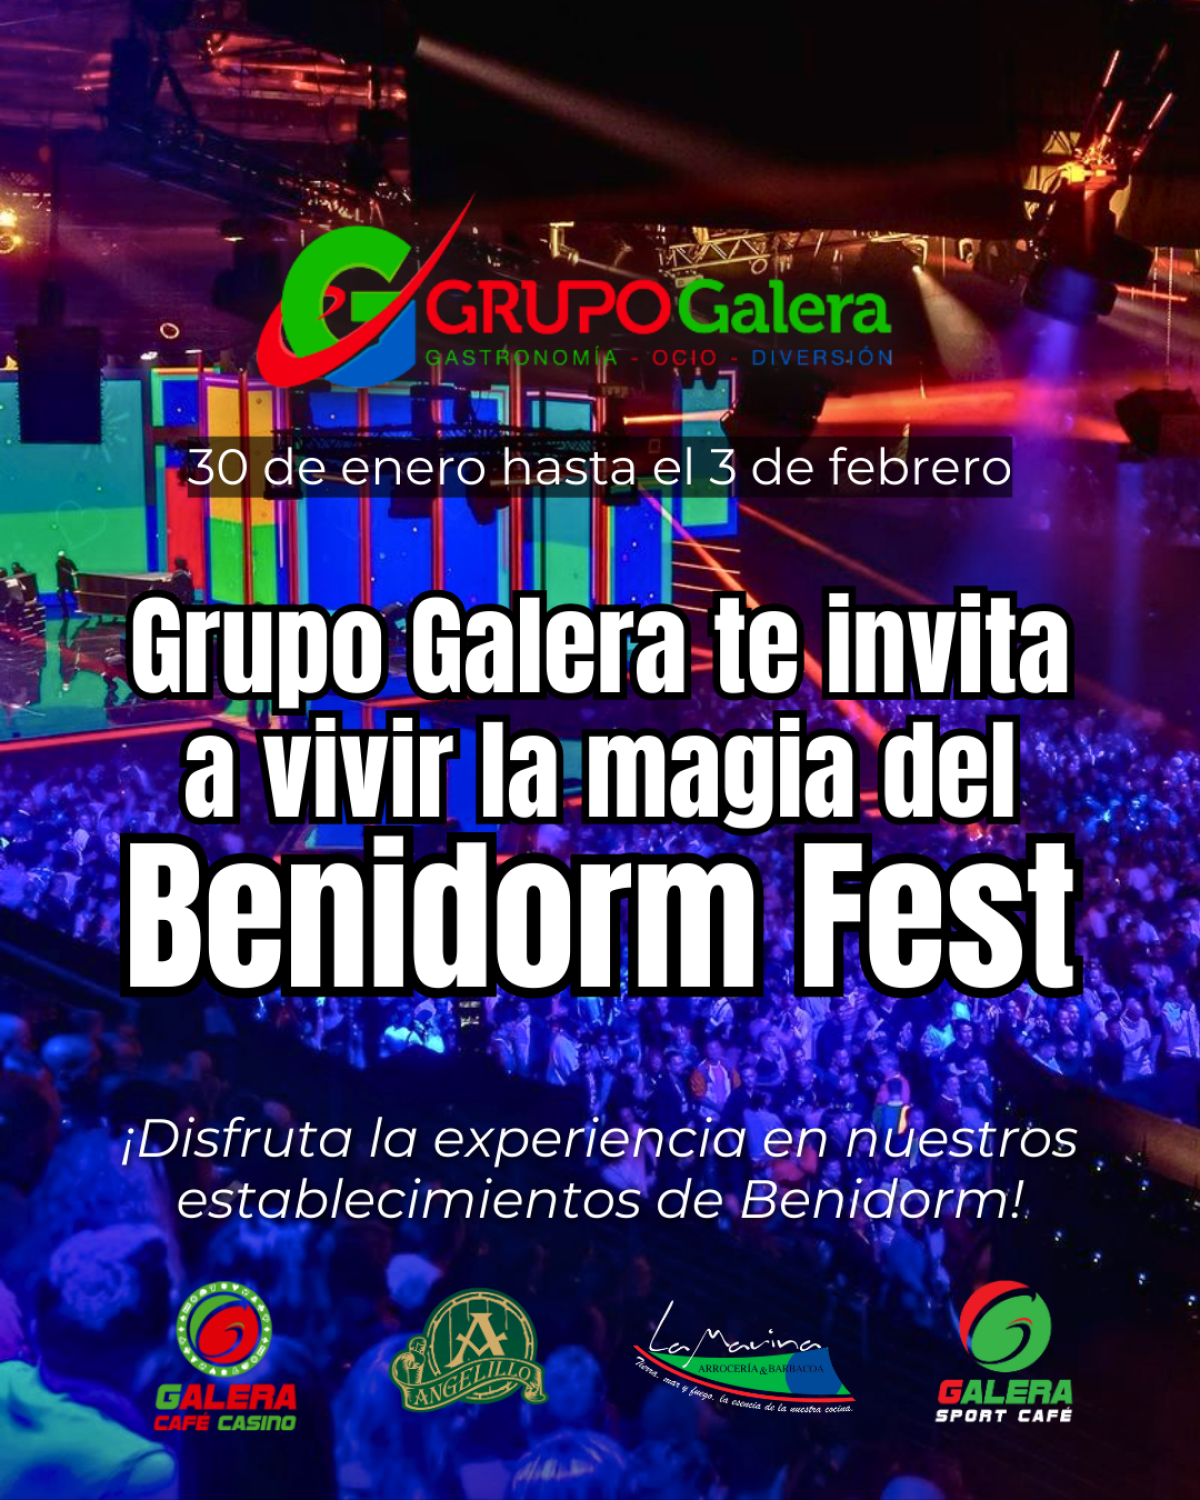 Vive el Benidorm Fest con Grupo Galera